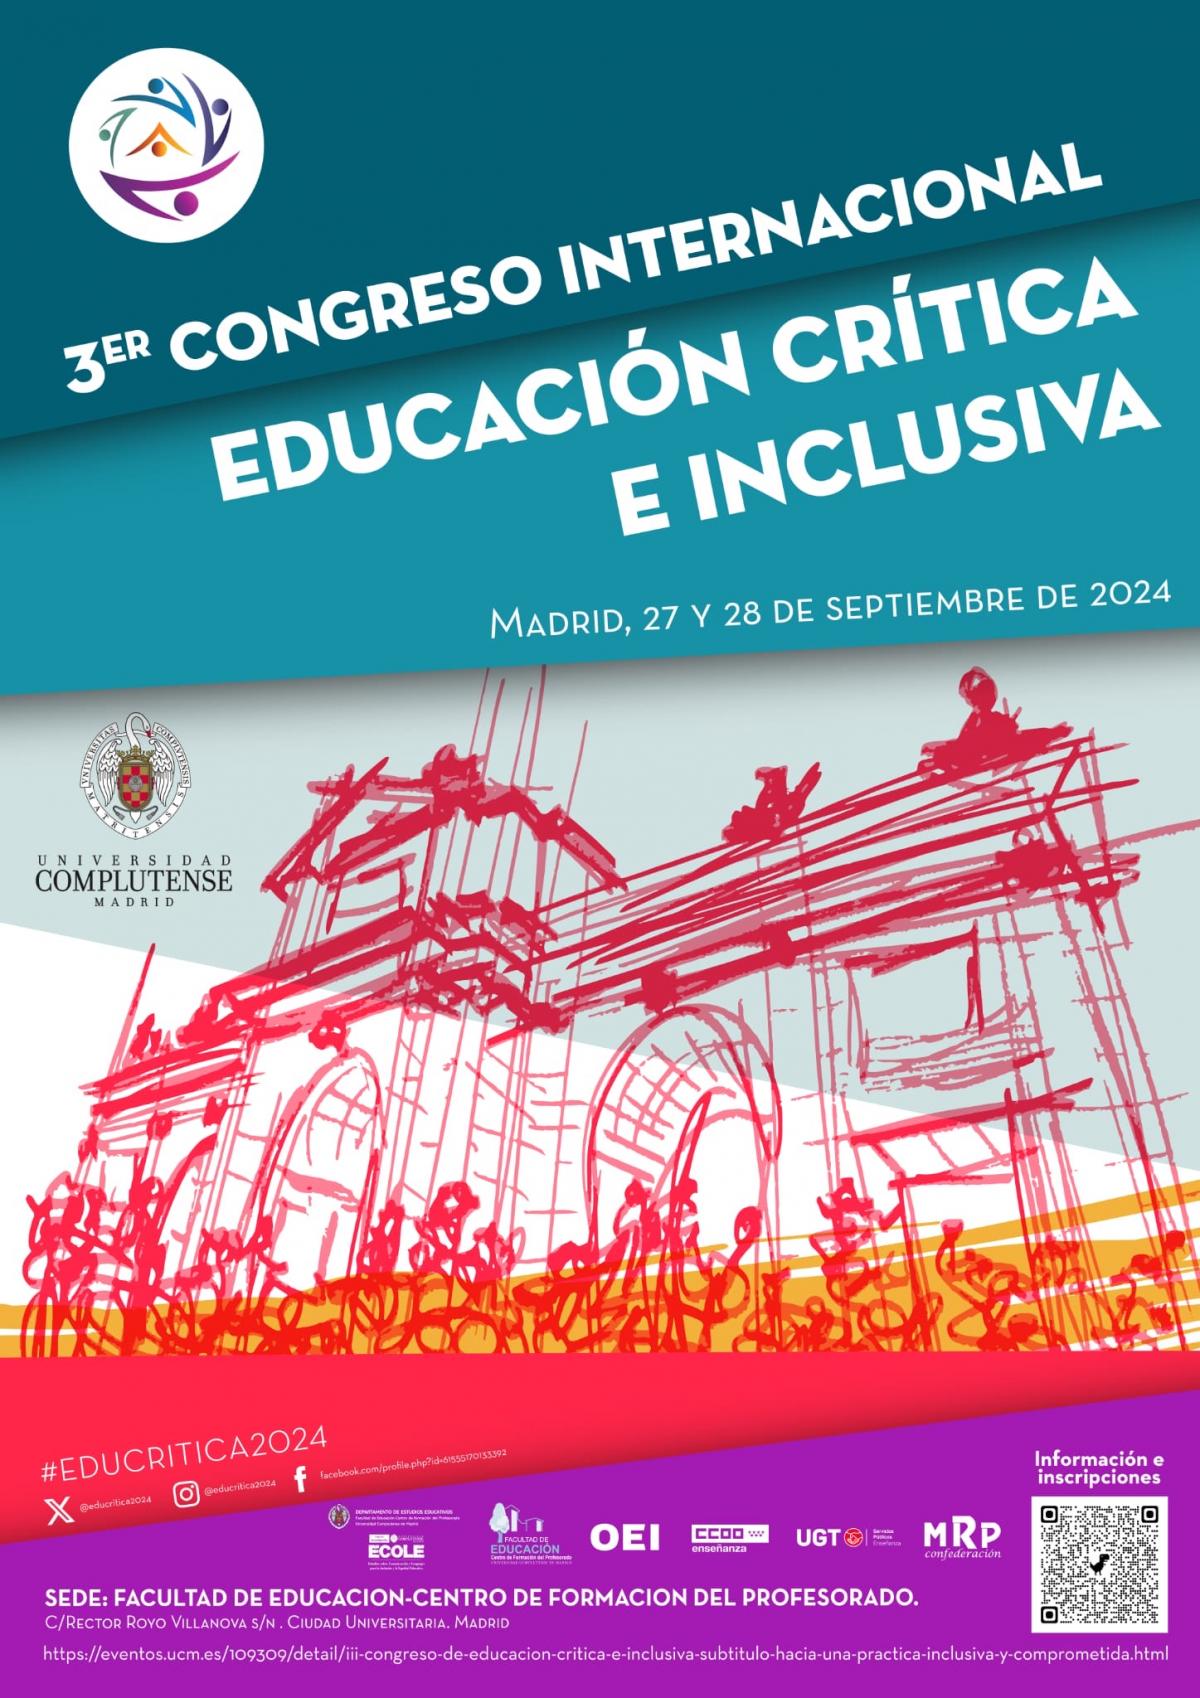 3er Congreso Internacional Educacin Crtica e Inclusisva